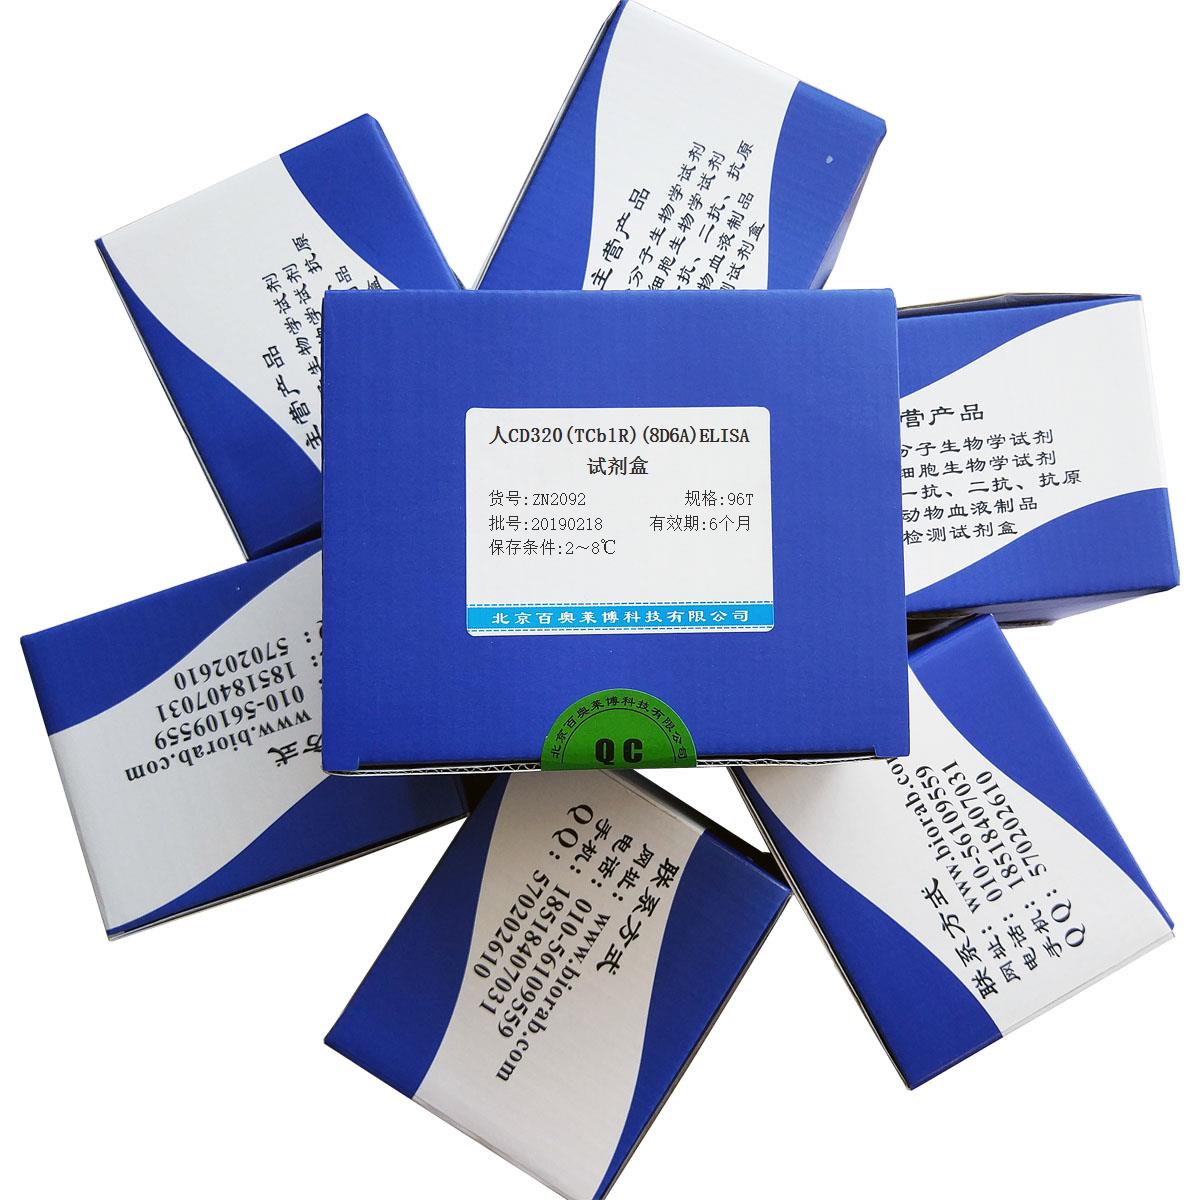 人CD320(TCblR)(8D6A)ELISA试剂盒